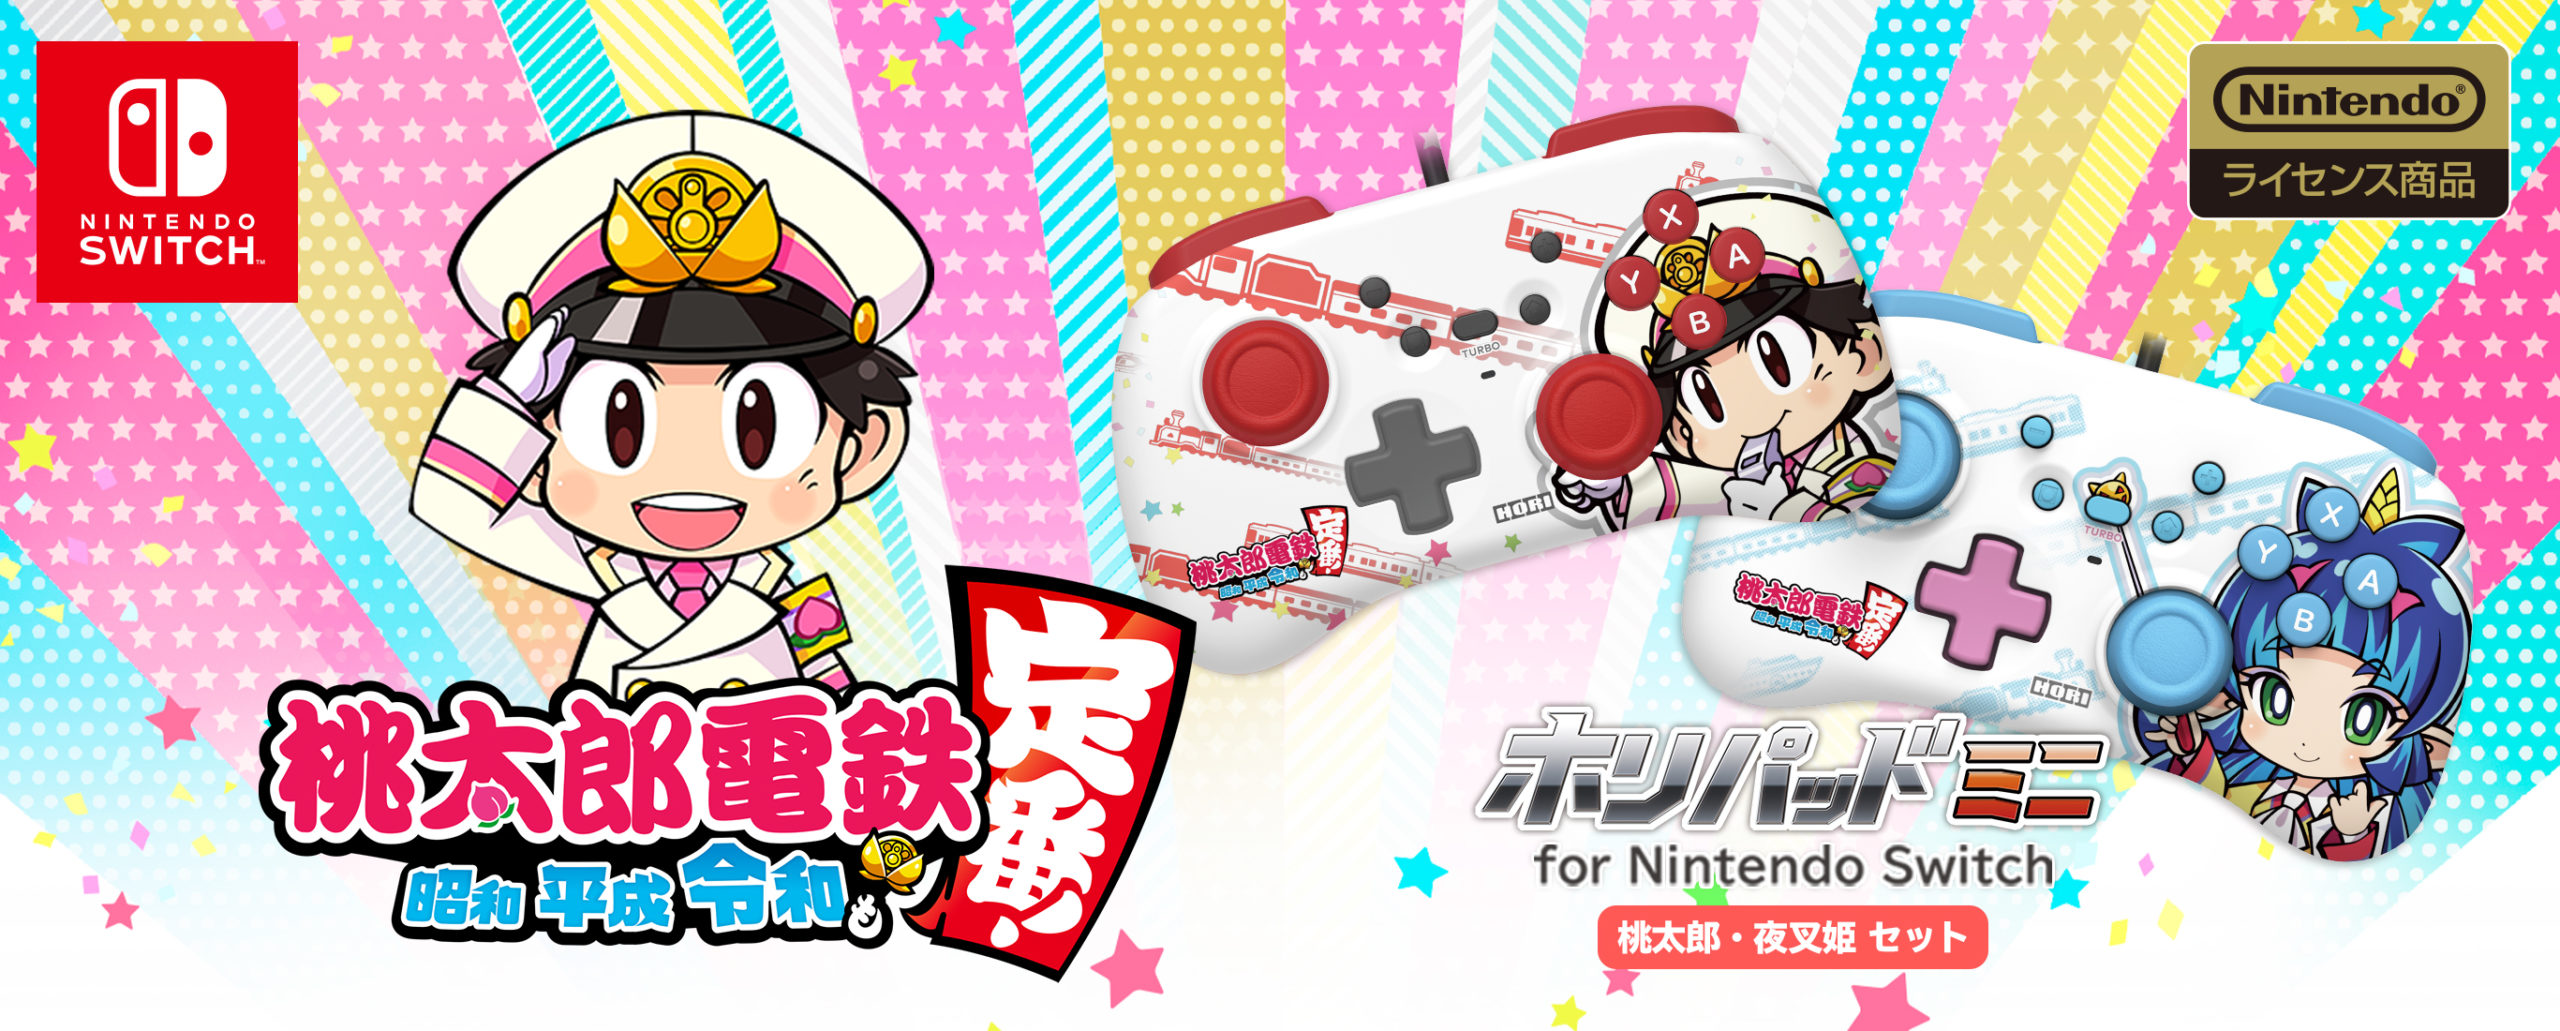 株式会社 HORI | ホリパッド ミニ for Nintendo Switch 桃太郎・夜叉姫 